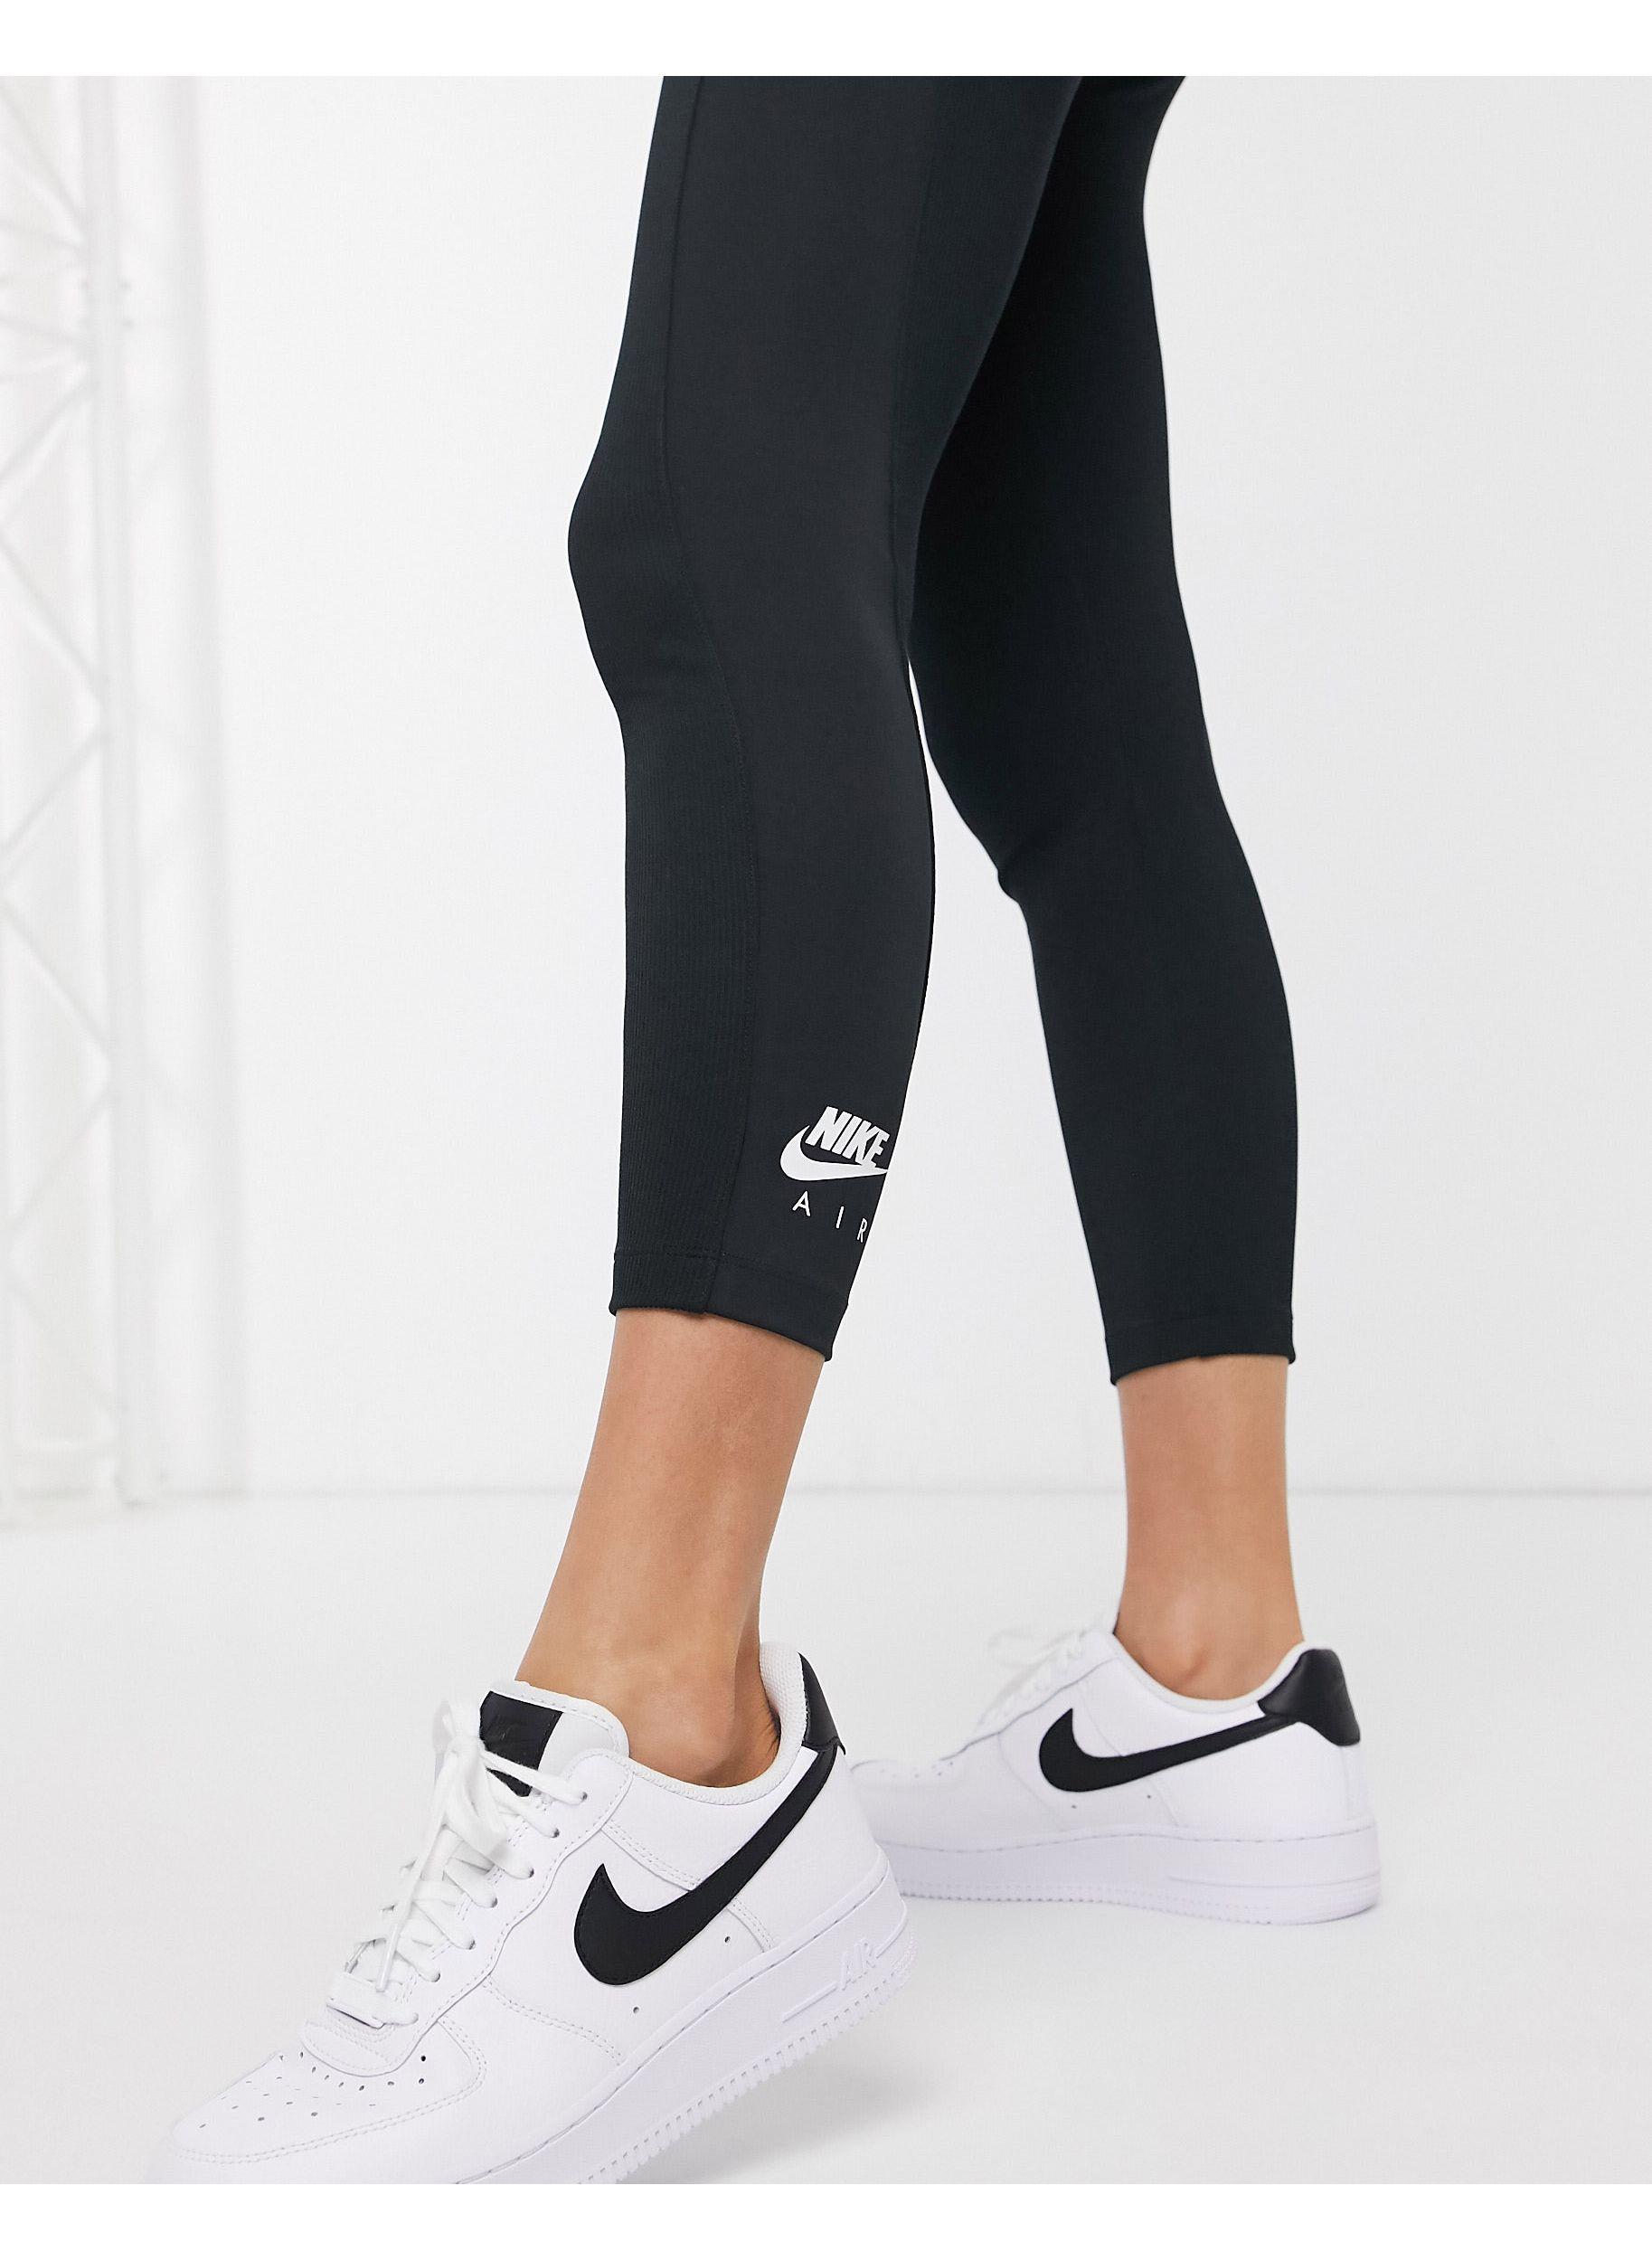 Women's Nike Air High-Rise Ribbed Leggings